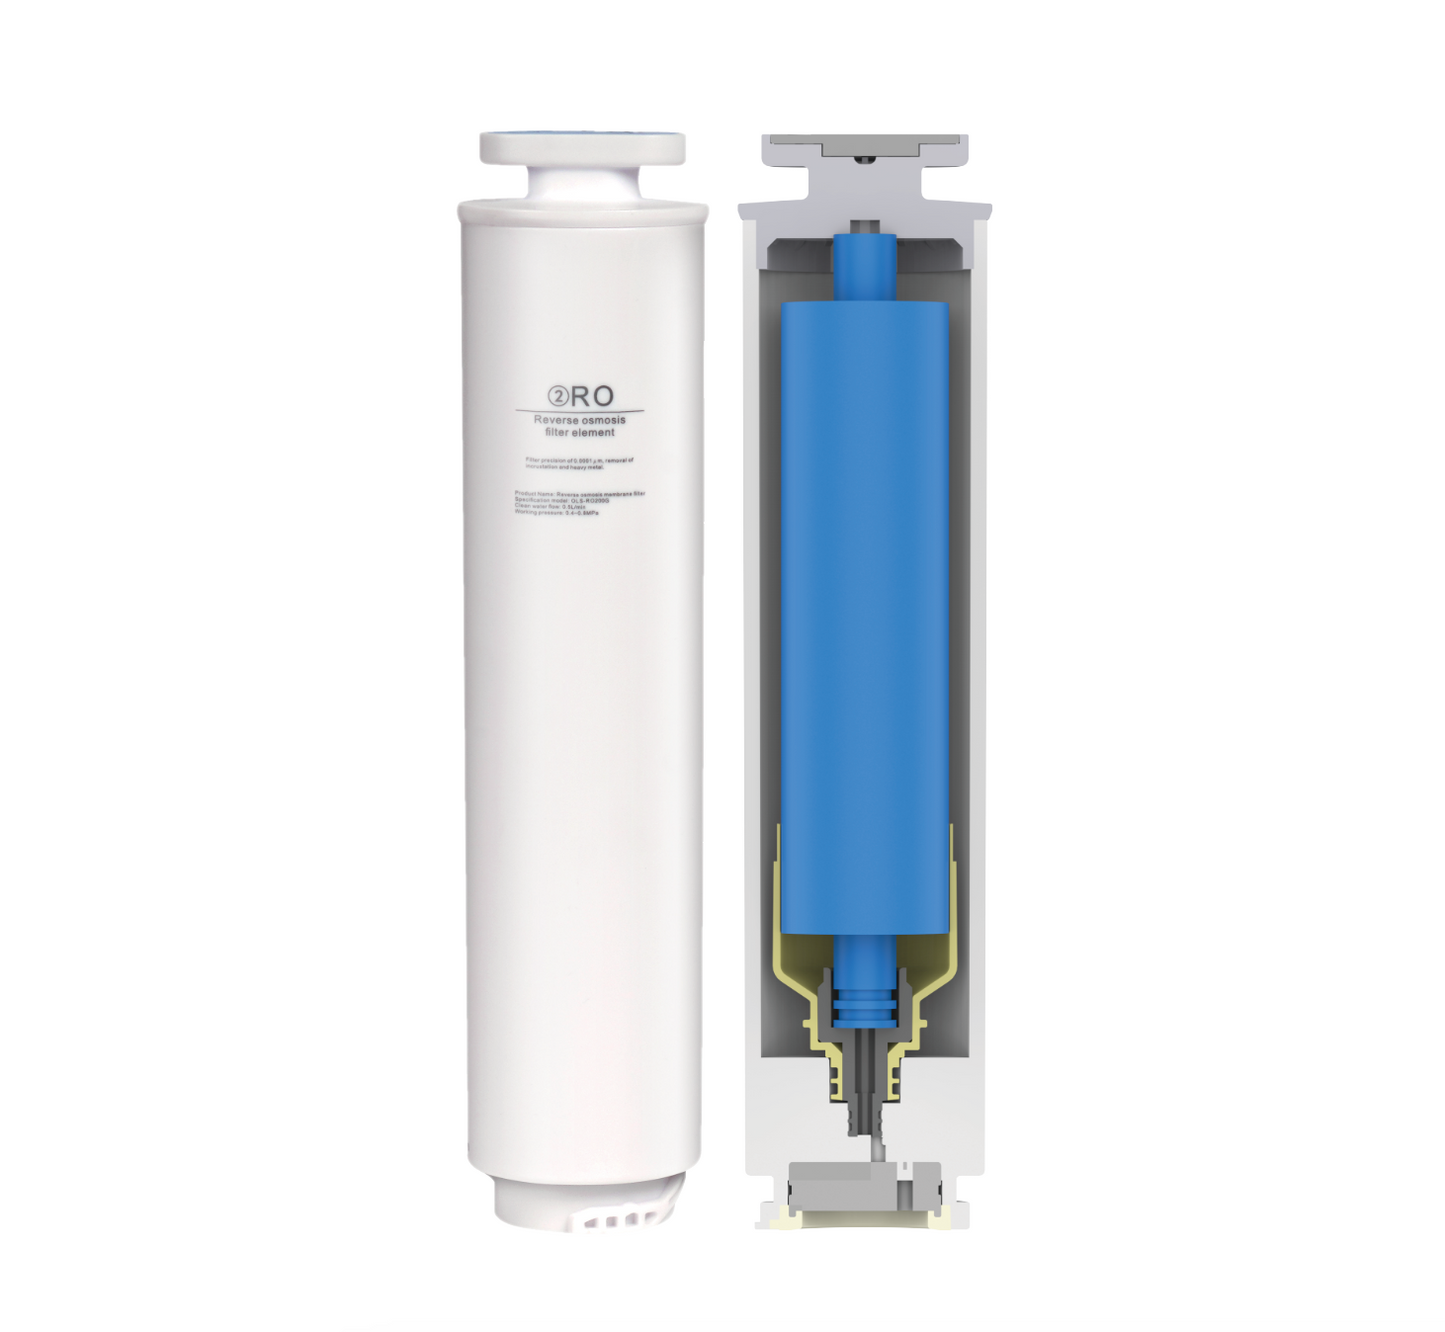 DM Home/Aquahome Pro1 RO反滲透淨化滤芯 (只适用于指定的RO净饮水机)